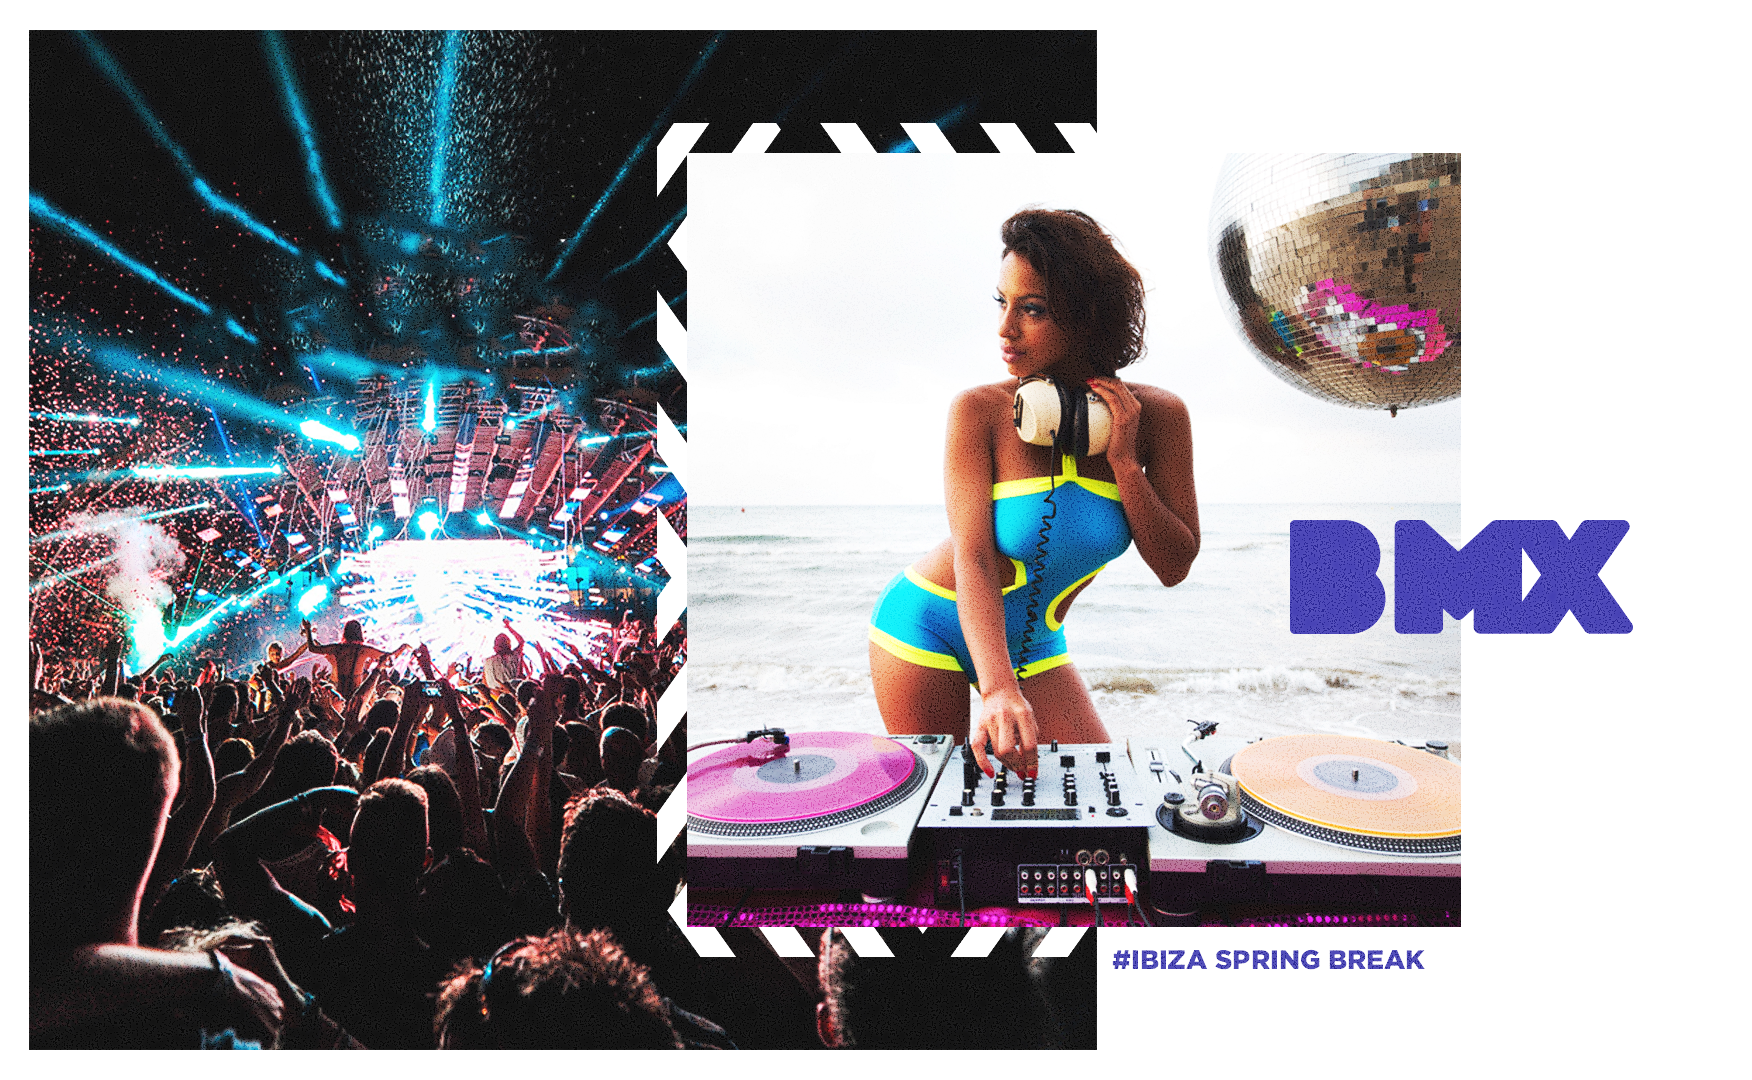 Tour Ibiza Spring Break 2021 con Be México